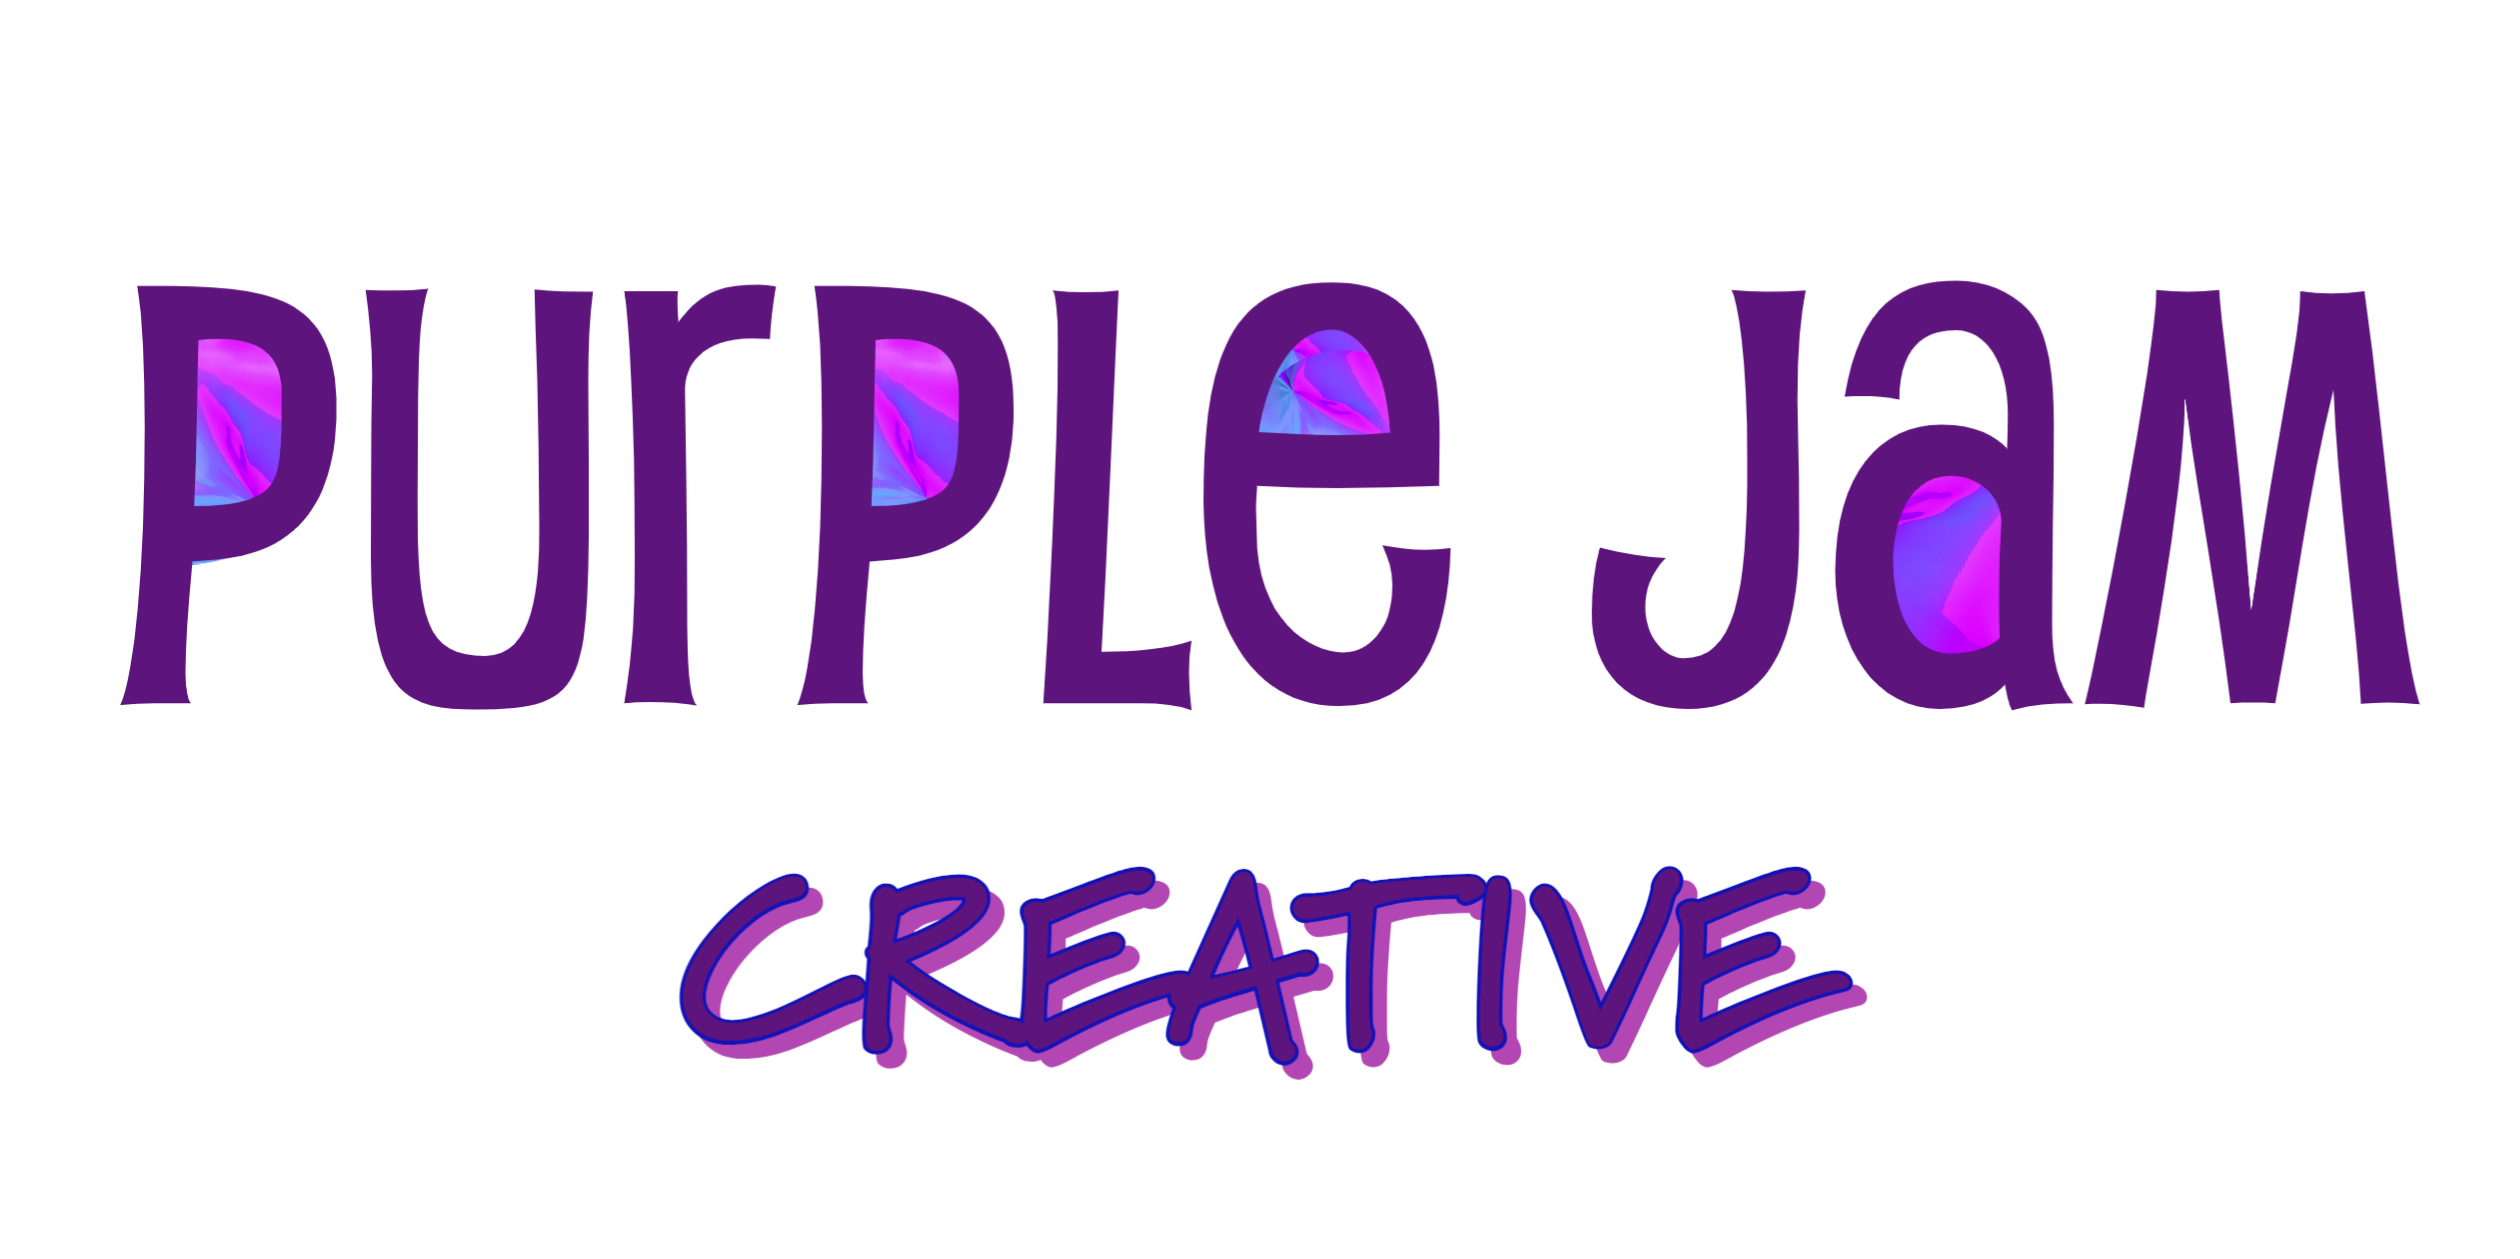 Purple jam creative - design unleased! | website design. Seo. Hosting. Monitoring | purple jam creative